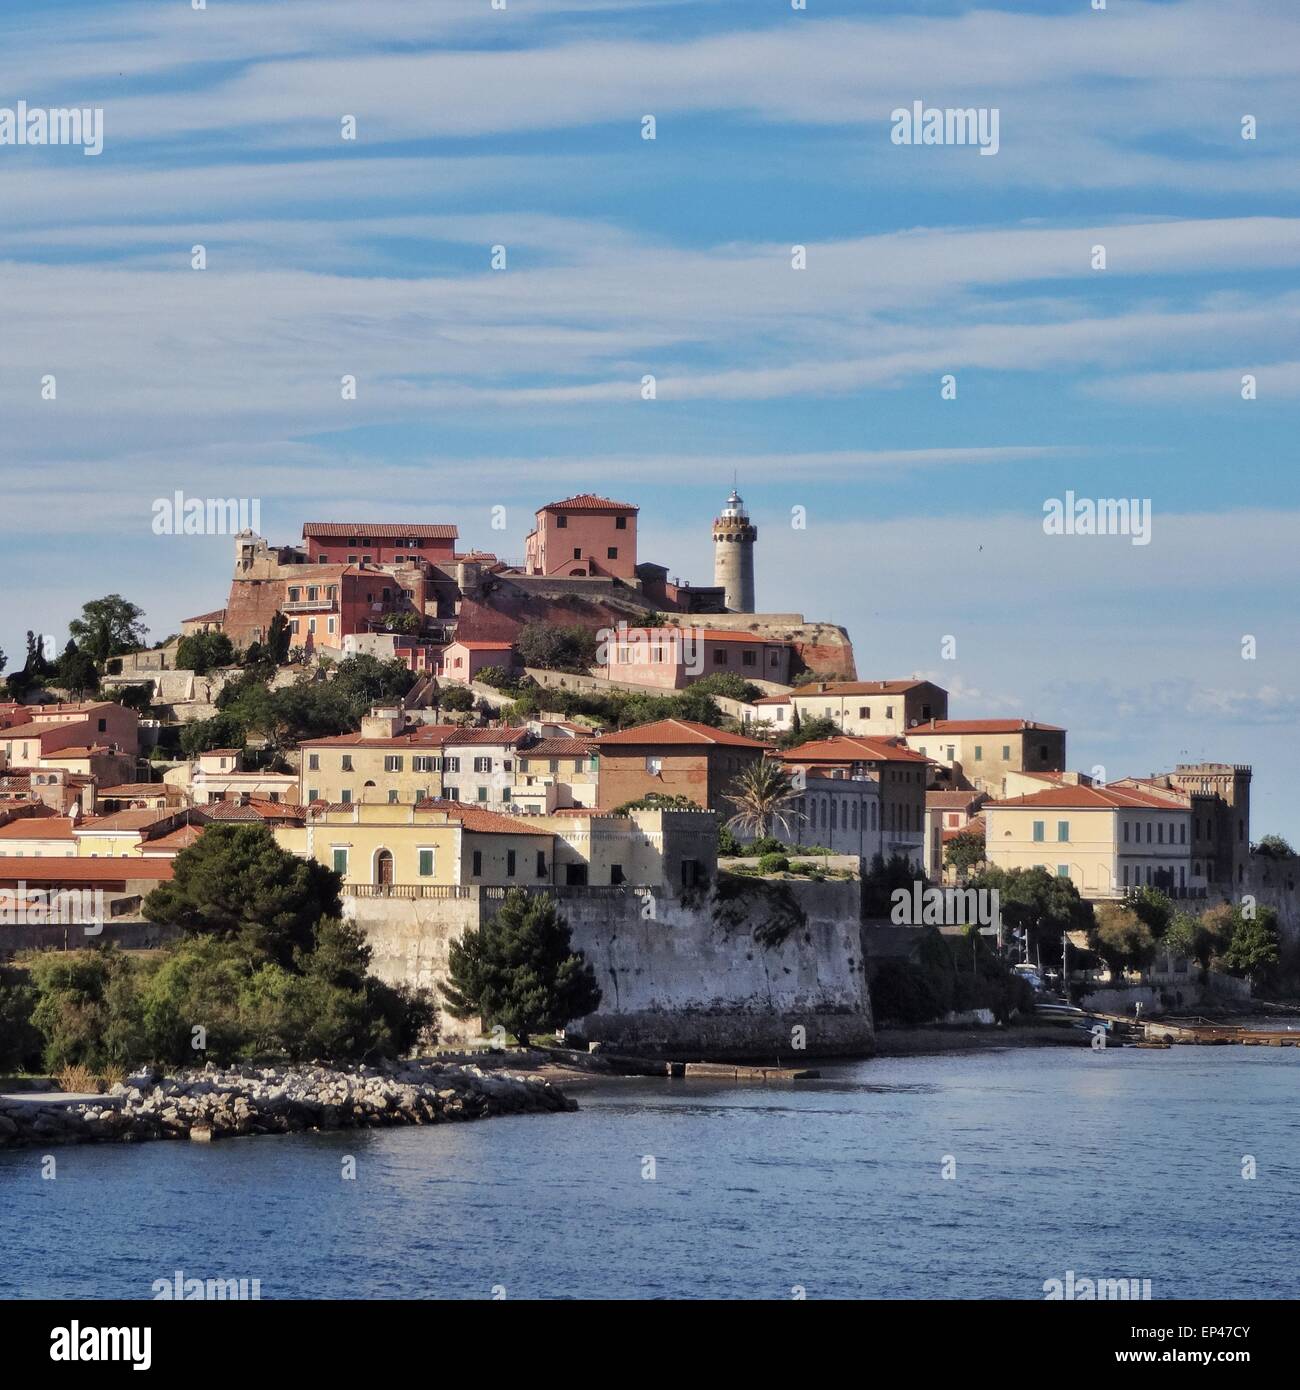 View of Elba, Tuscany, Italy Stock Photo